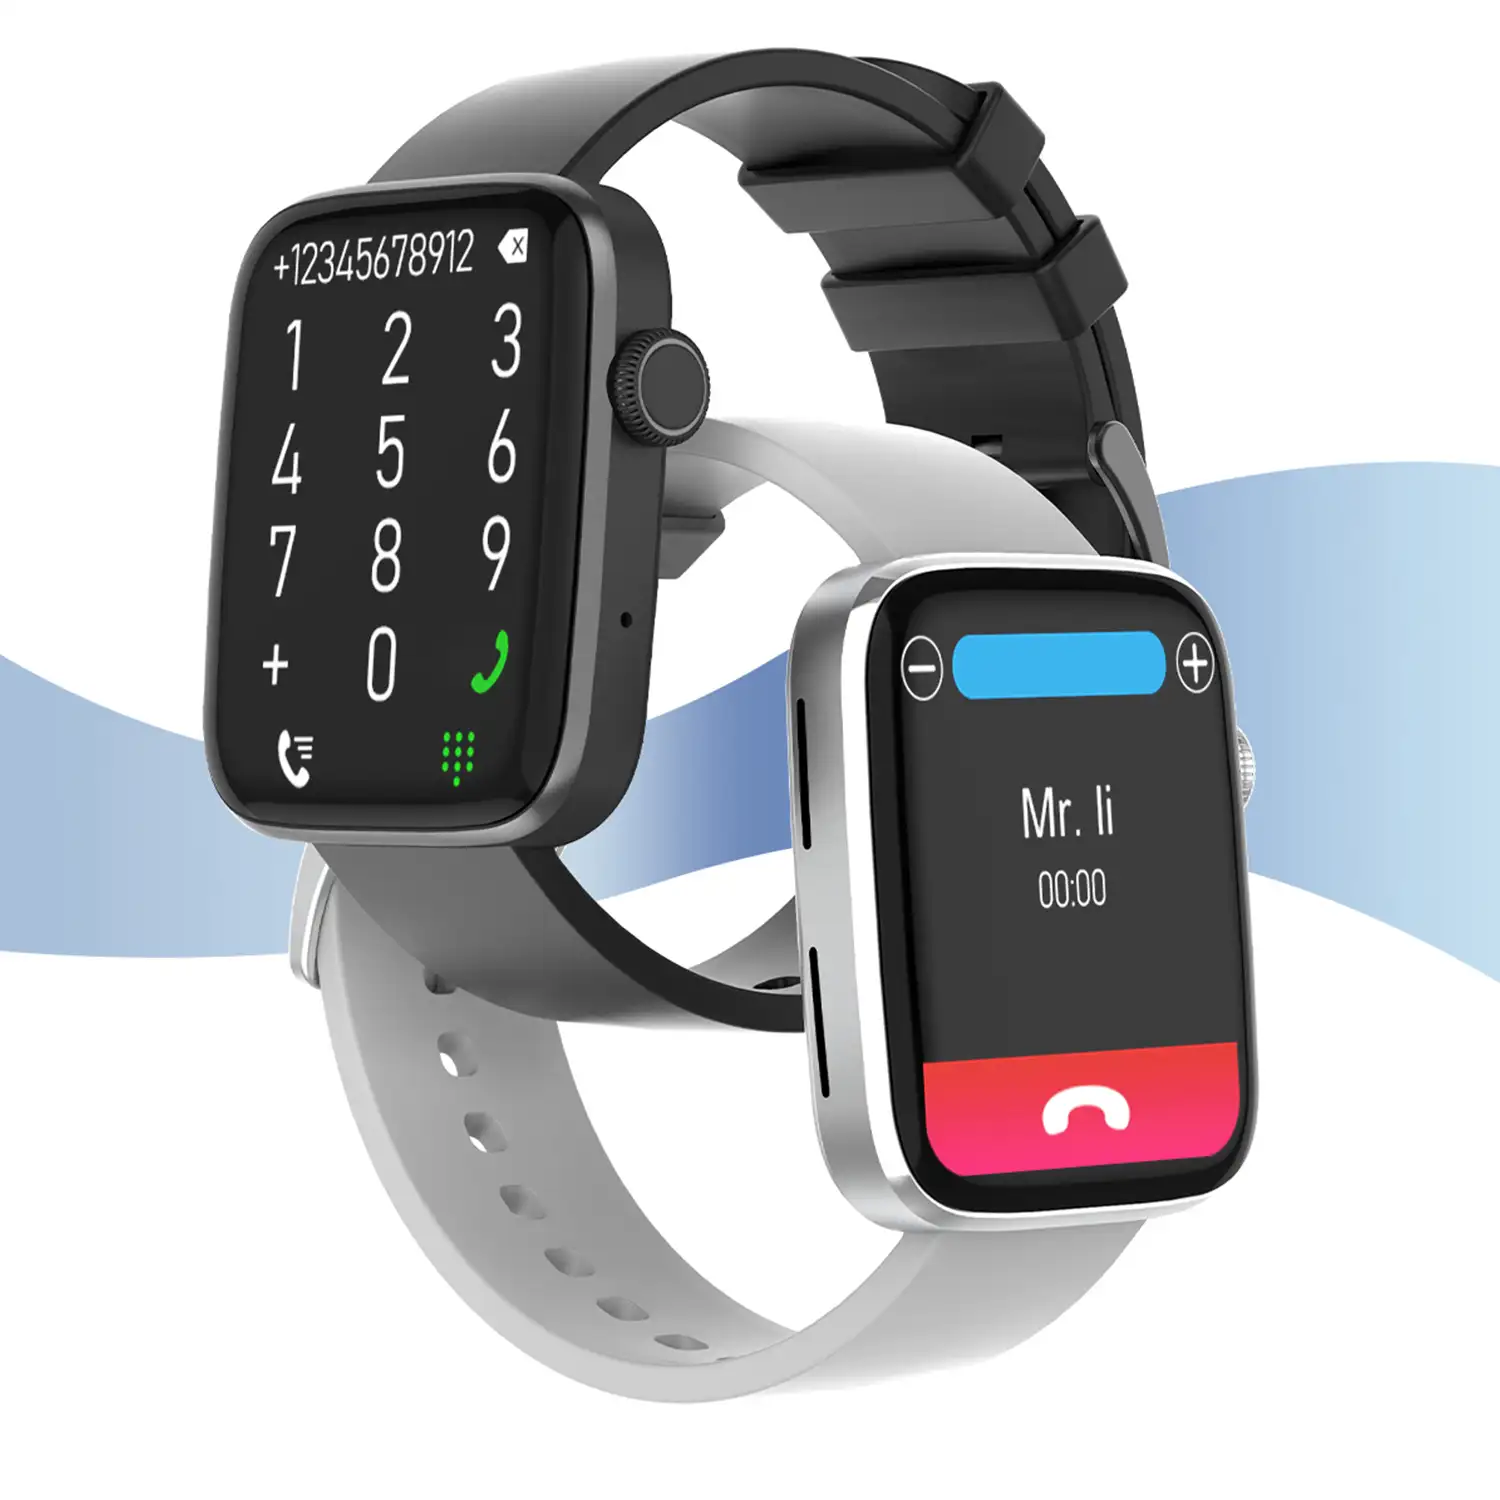 Smartwatch DT1 con corona giratoria inteligente, monitor de tensión y O2 en sangre; 11 modos multideportivos. Fondos personalizables.